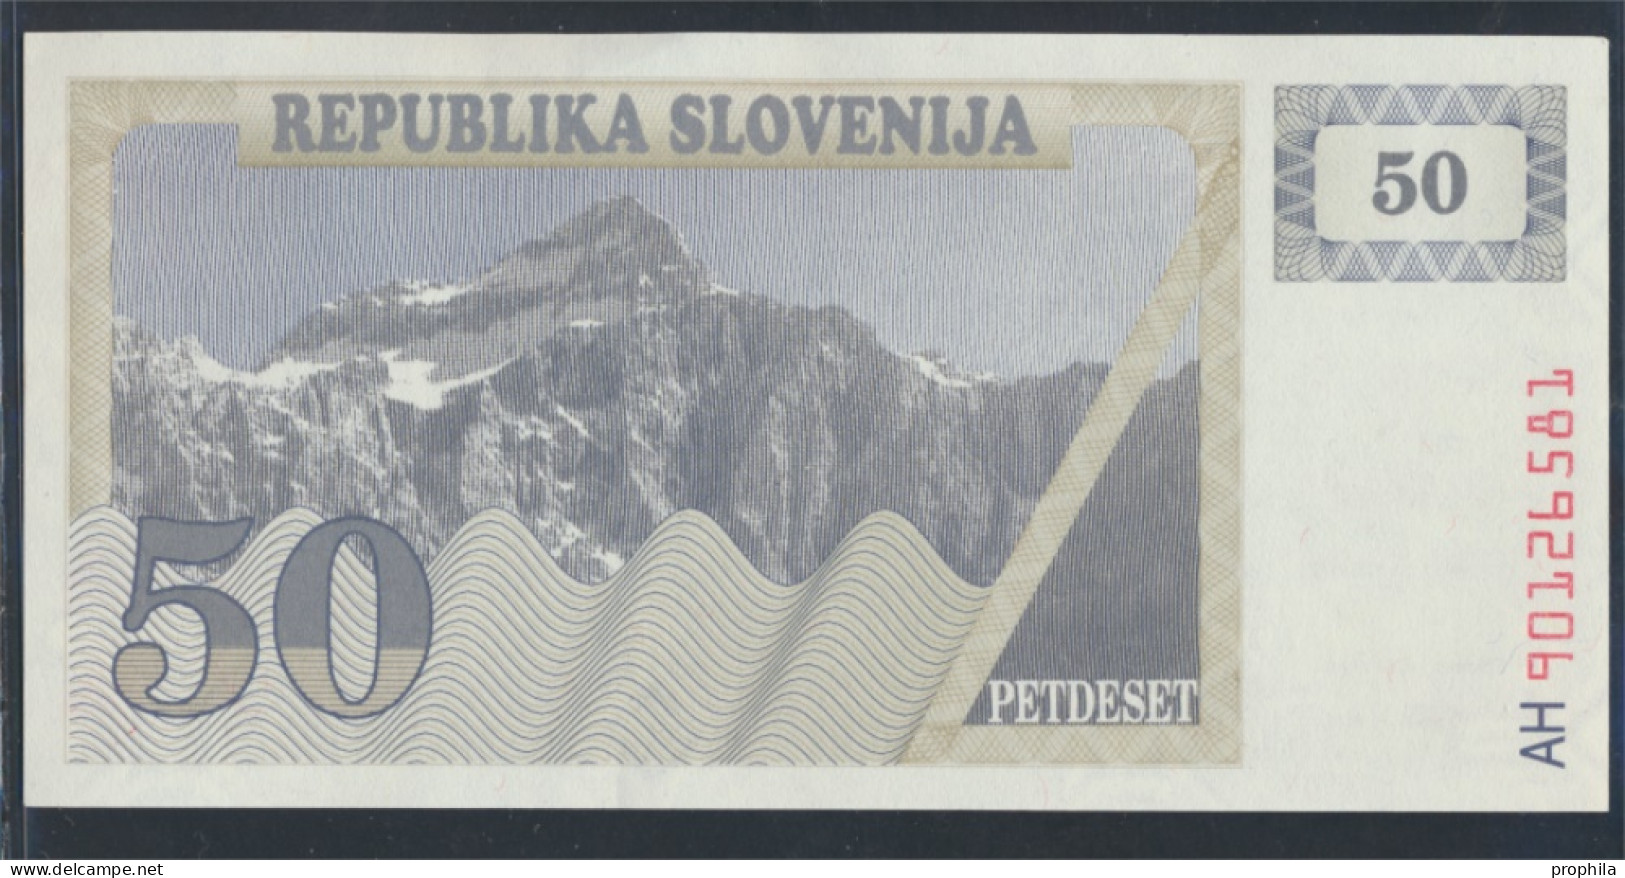 Slowenien Pick-Nr: 5a Bankfrisch 1990 50 Tolarjev (9855652 - Slovénie